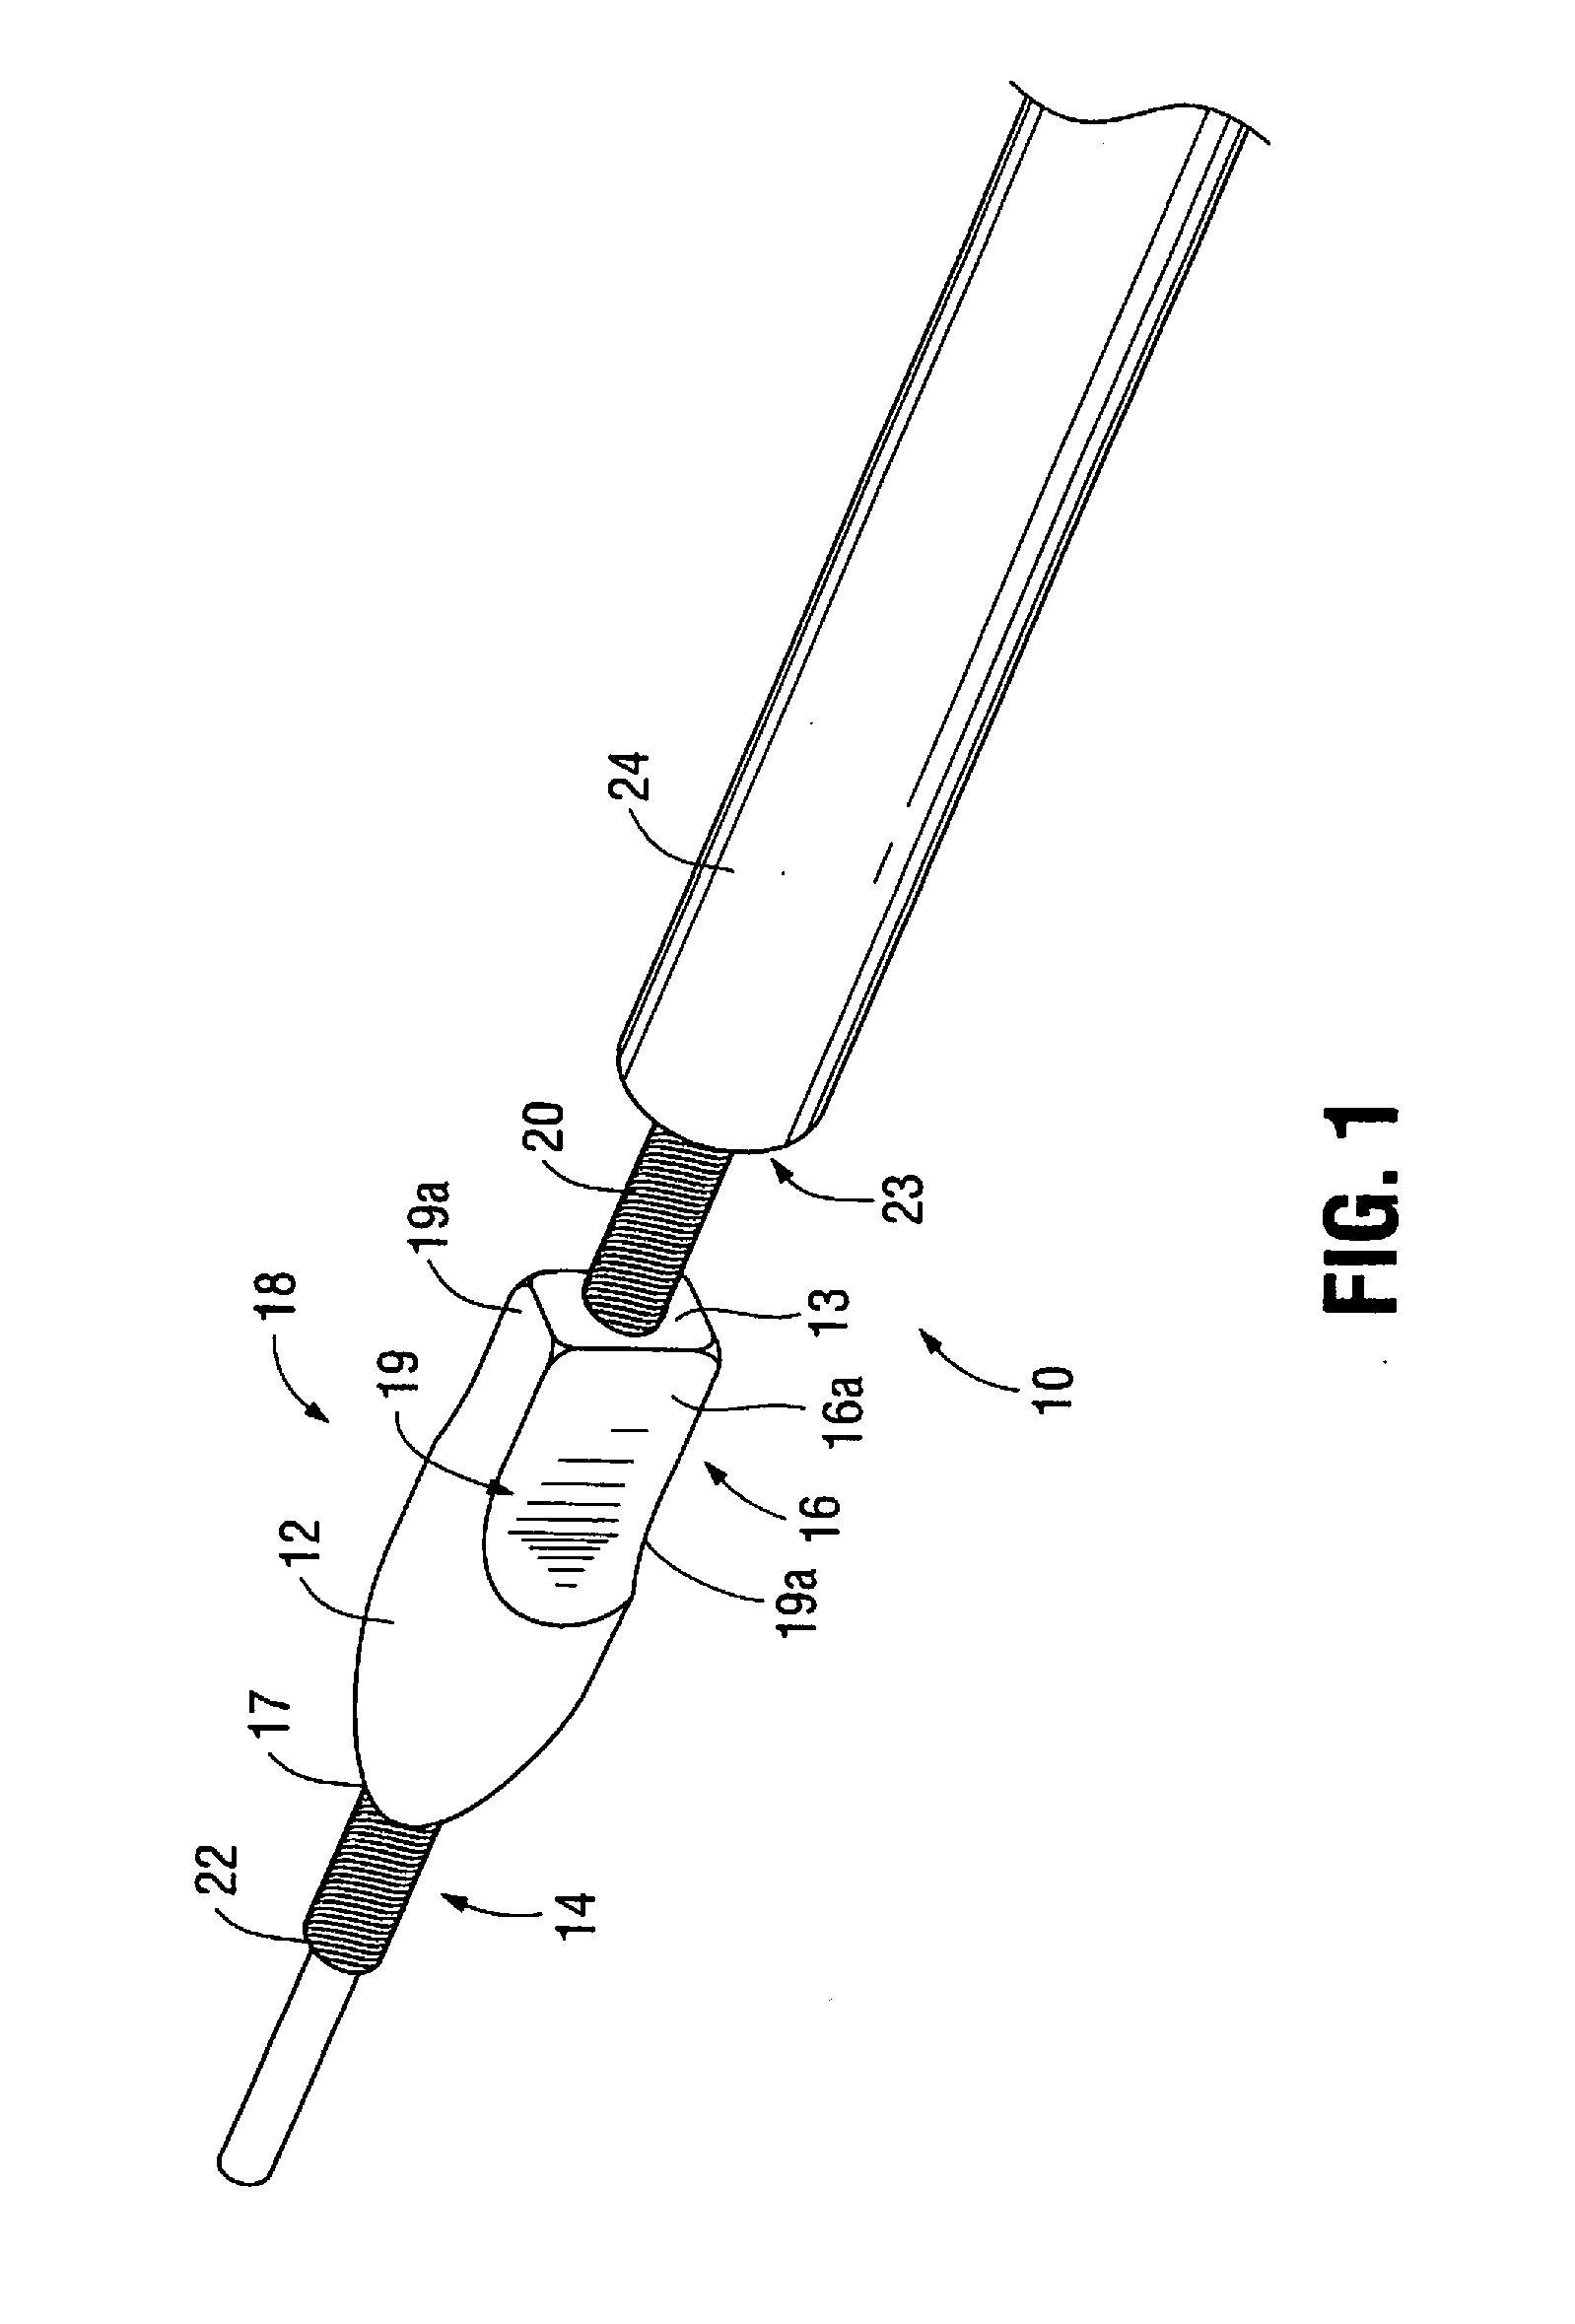 Artherectomy device